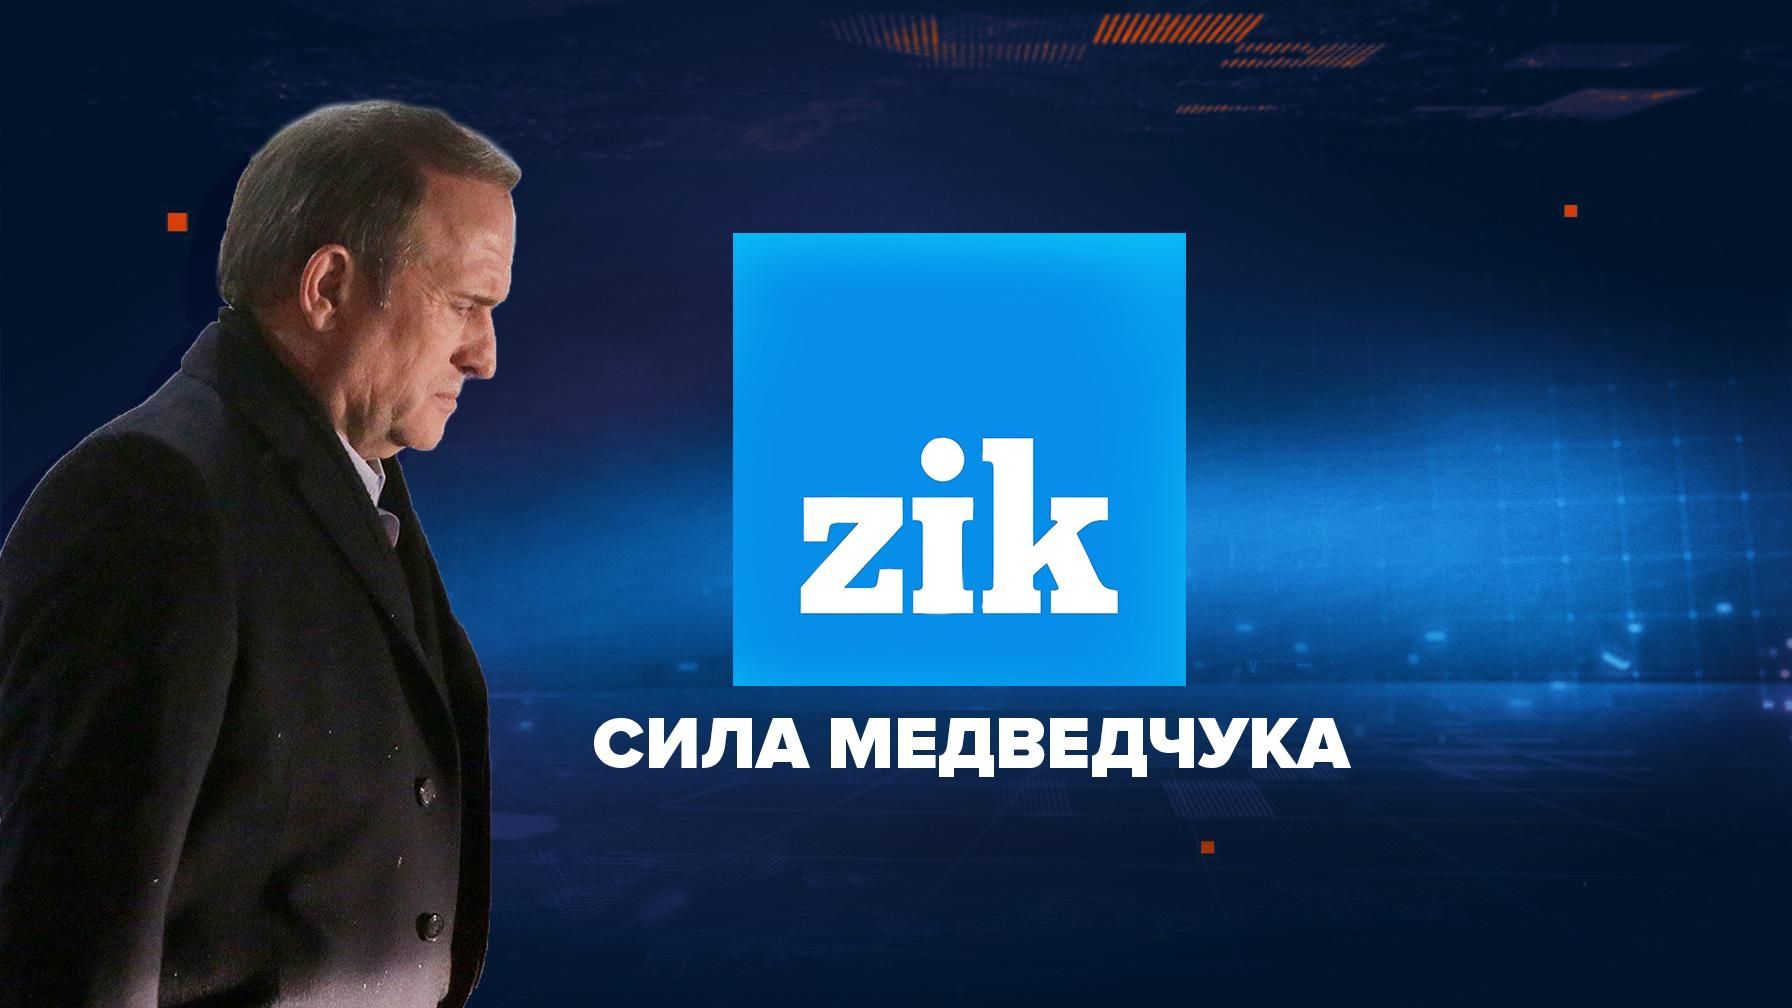 Навіщо Медведчуку телеканал ZIK: думка журналістки